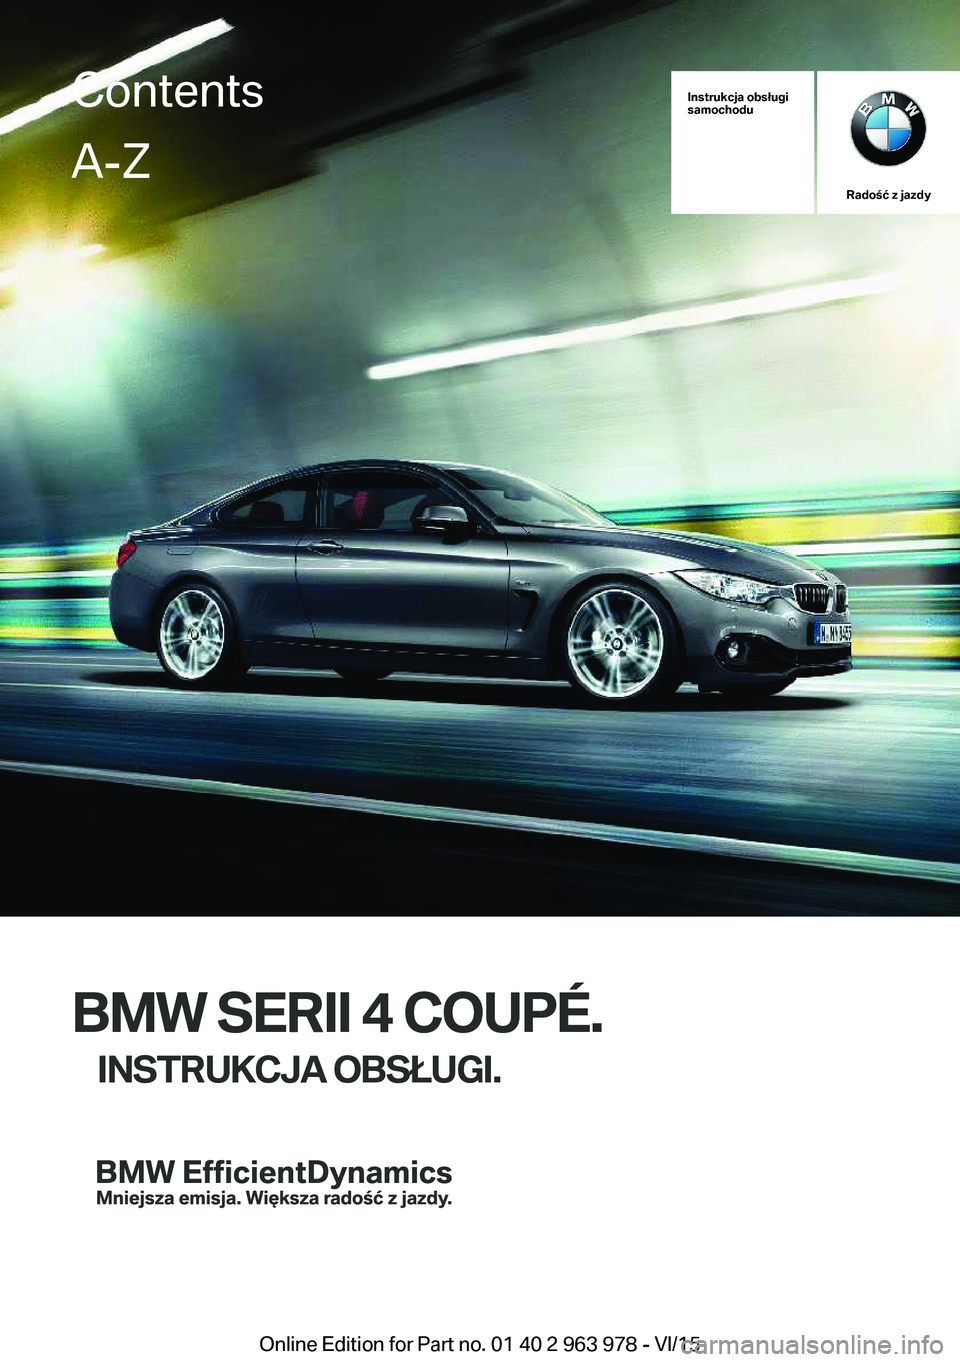 BMW 4 SERIES COUPE 2016  Instrukcja obsługi (in Polish) Instrukcja obsługi
samochodu
Radość z jazdy
BMW SERII 4 COUPÉ.
INSTRUKCJA OBSŁUGI.
ContentsA-Z
Online Edition for Part no. 01 40 2 963 978 - VI/15   